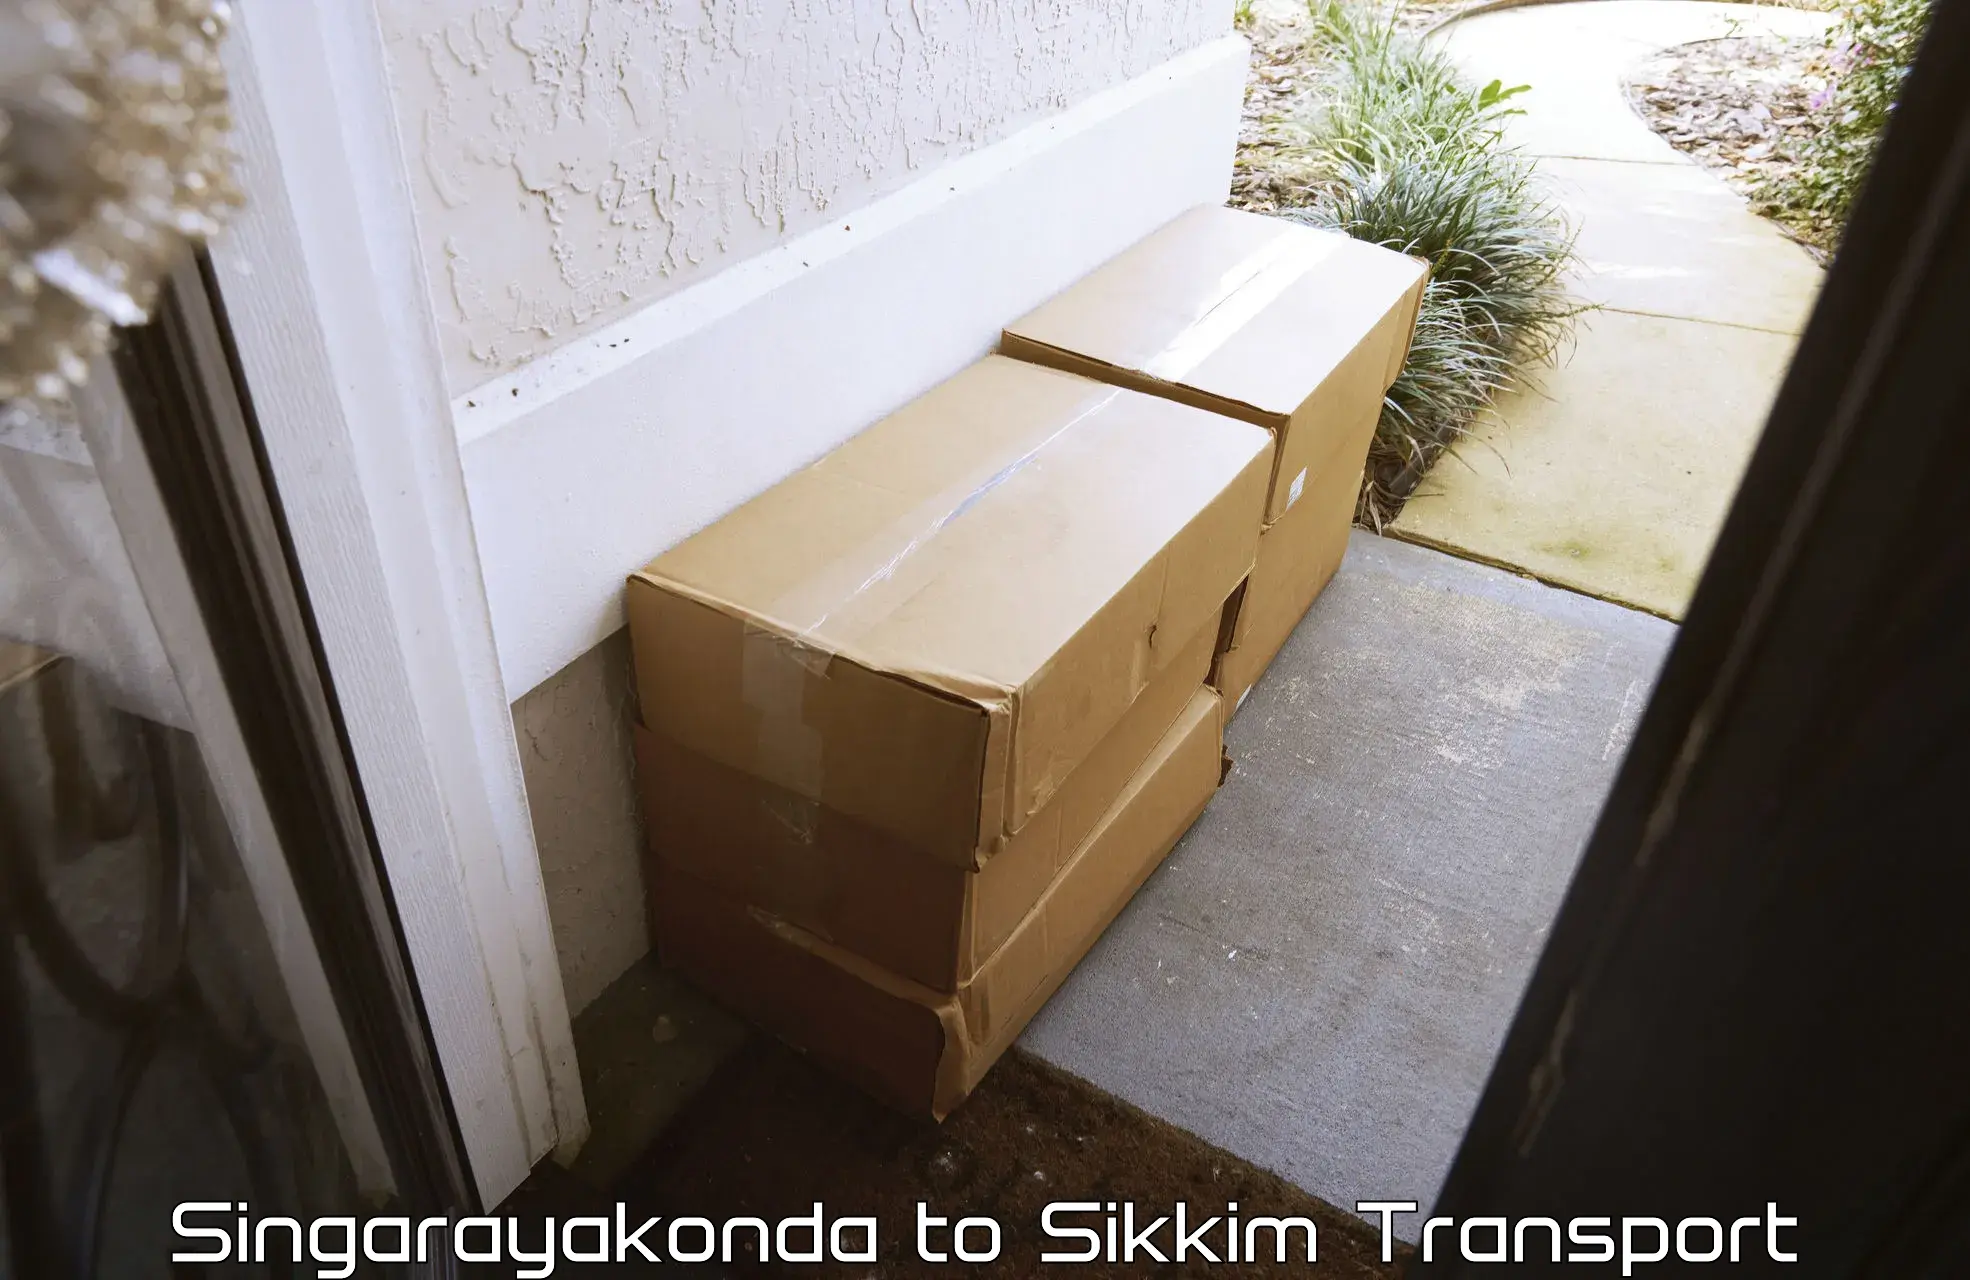 Bike shipping service Singarayakonda to North Sikkim